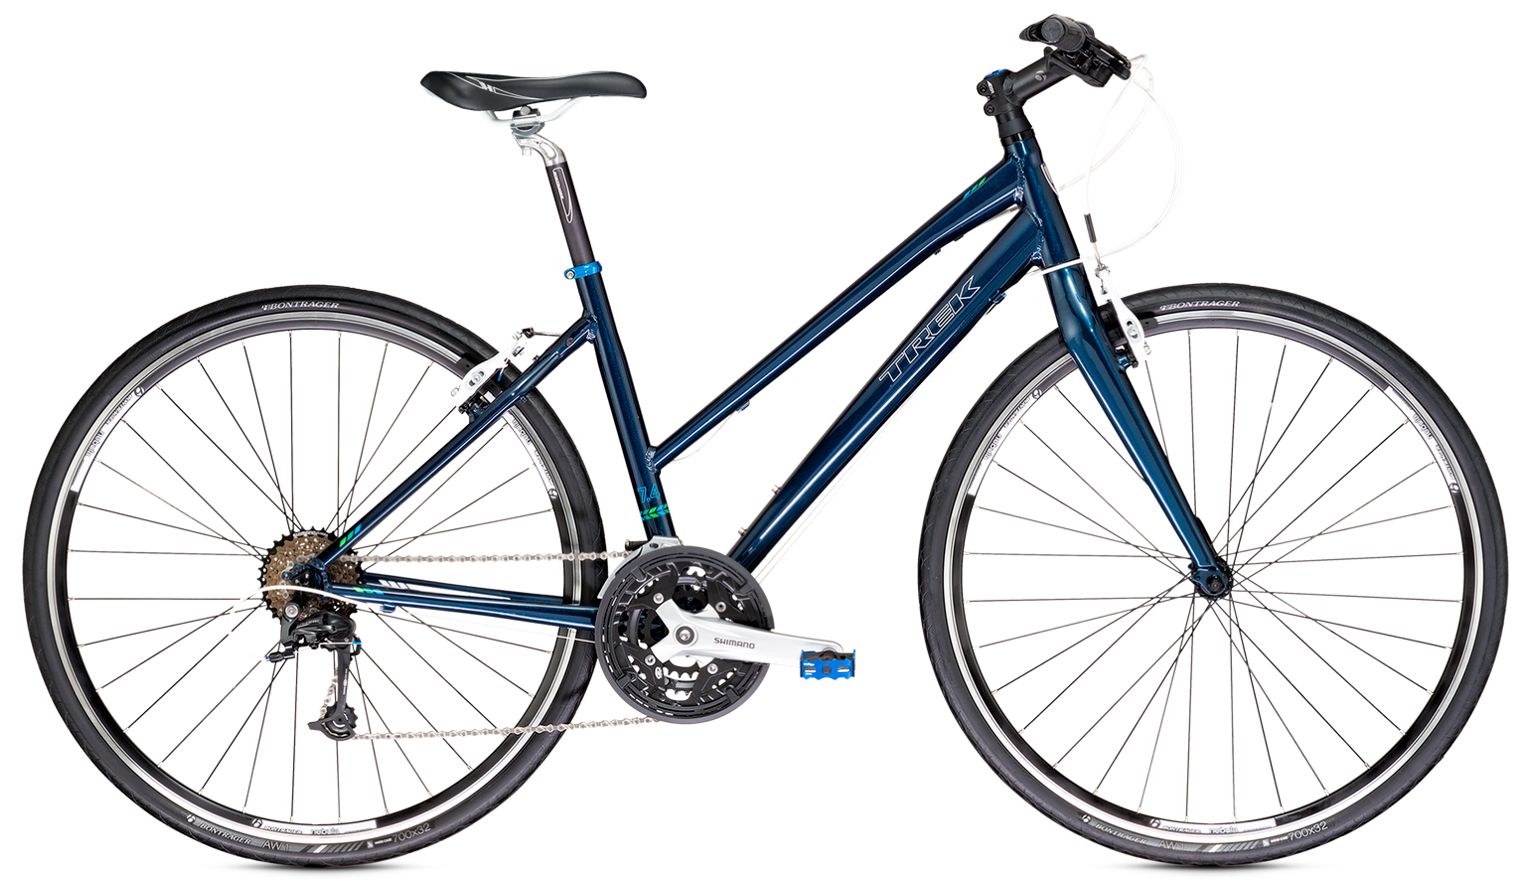  Отзывы о Женском велосипеде Trek 7.4 FX WSD 2014